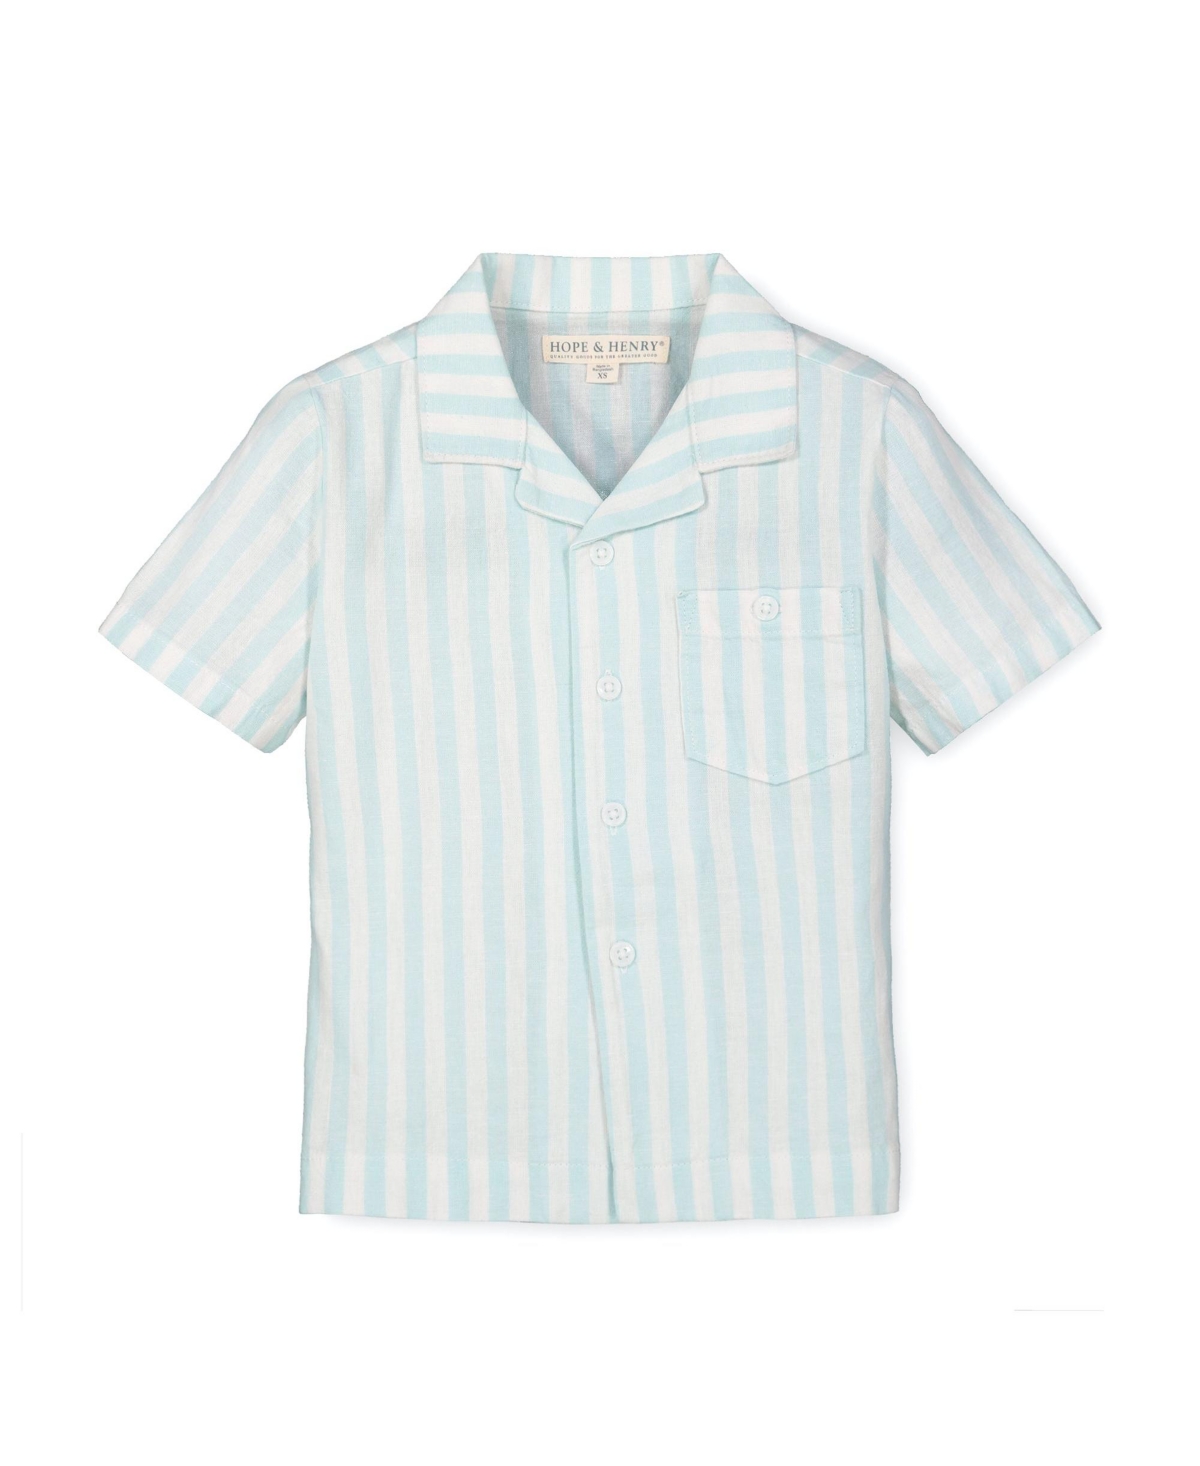 Hope & Henry Boys Linen Short Sleeve Camp Shirt, Infant